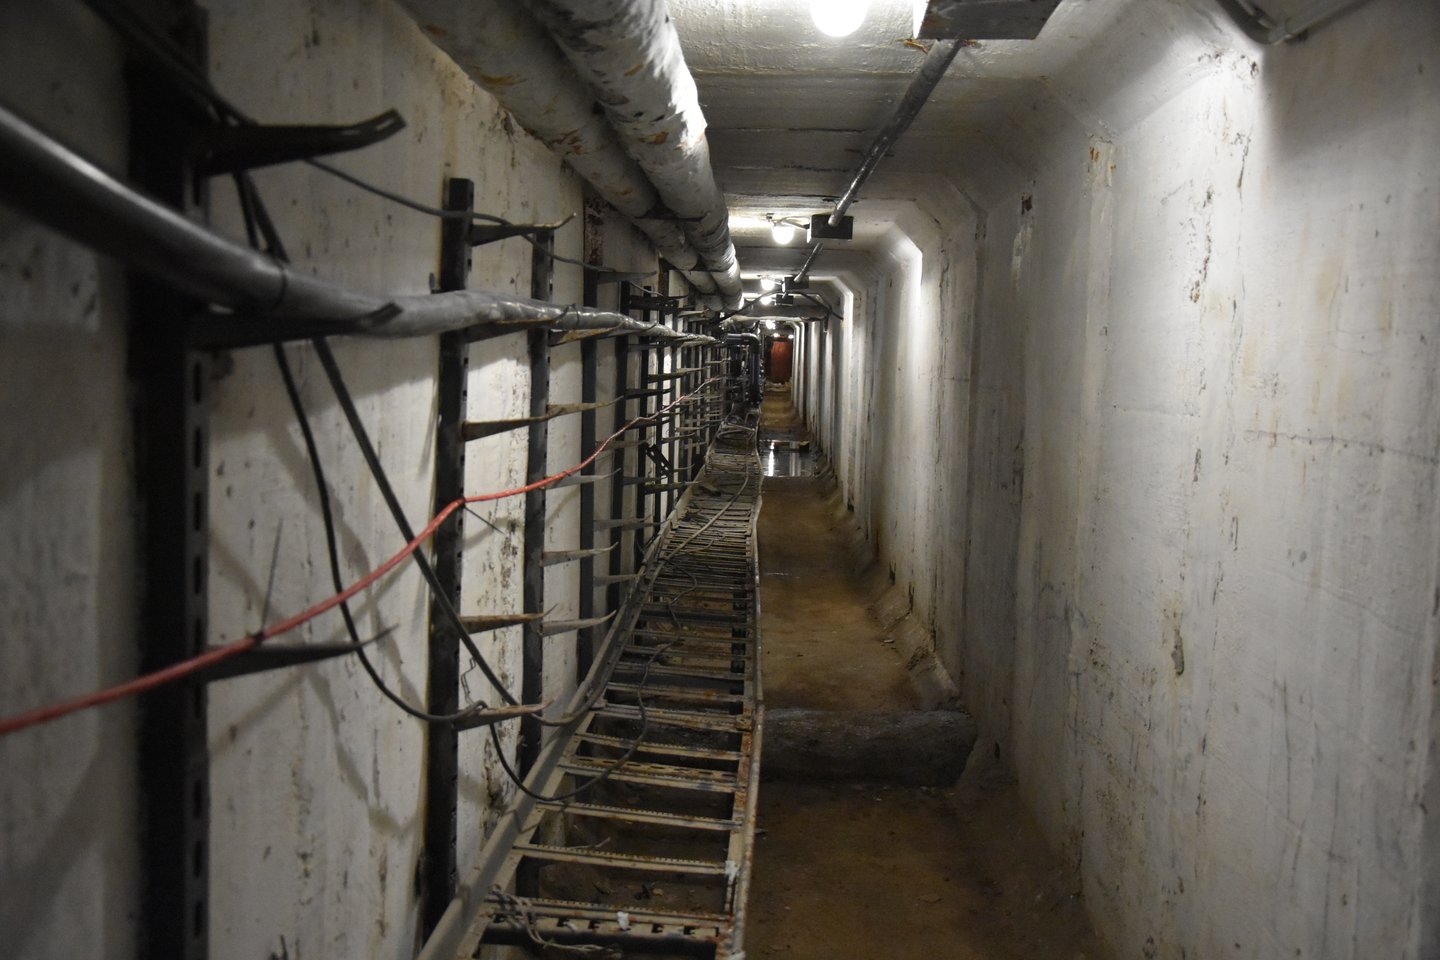  Požeminiai tuneliai - sovietmečio palikimas. Juos įveikti tamsoje norinčių netrūksta.  <br> A.Srėbalienės nuotr.